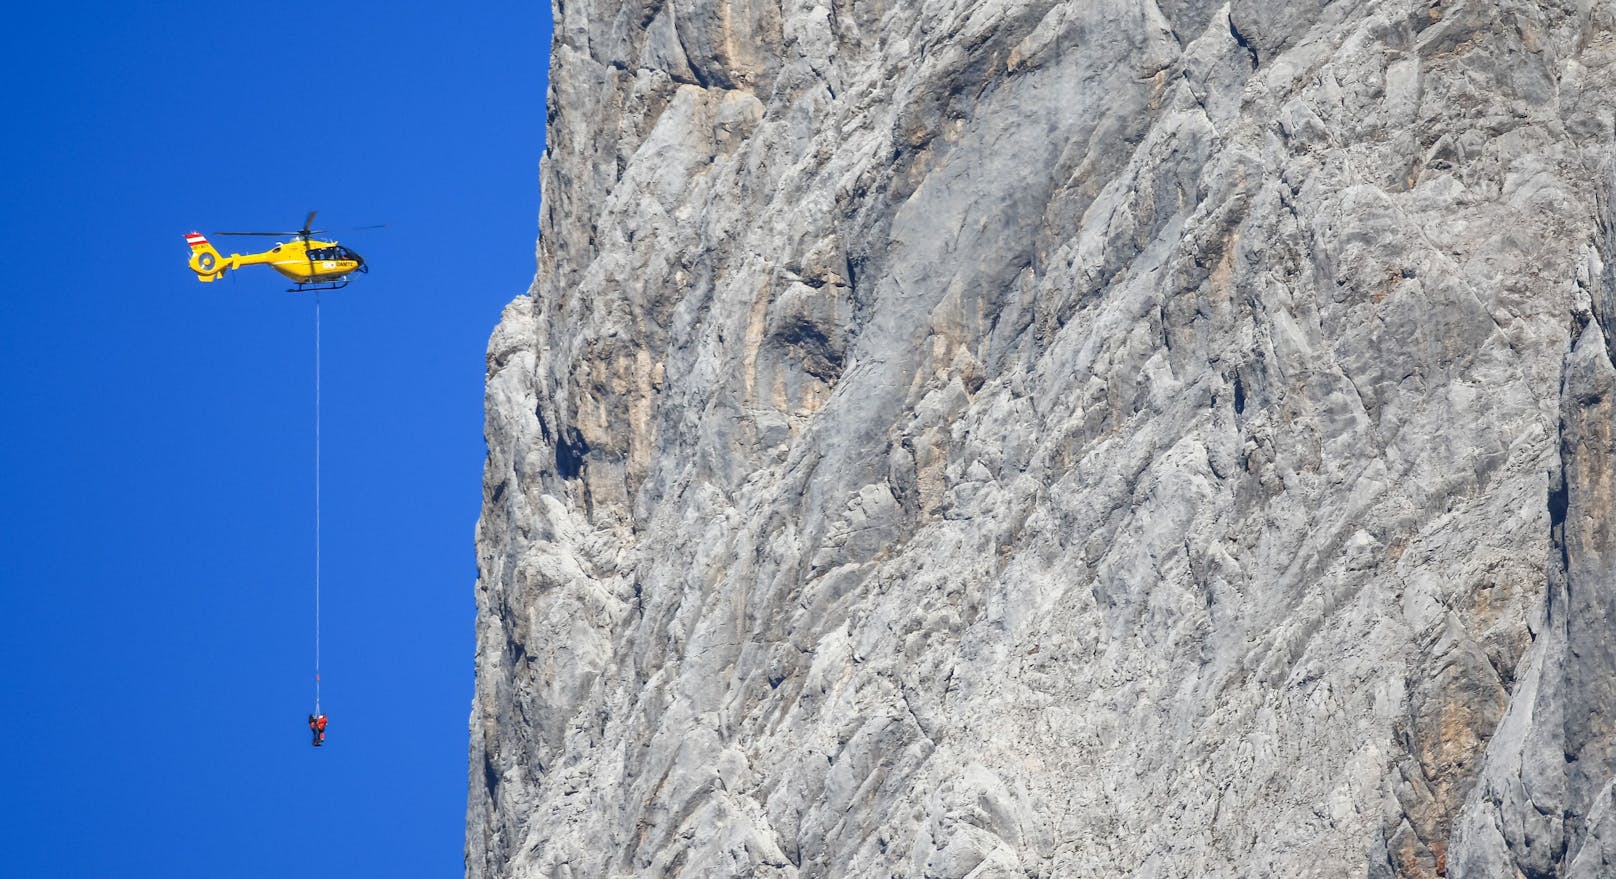 Wiener hängt fünf Stunden in Felswand im Montafon fest